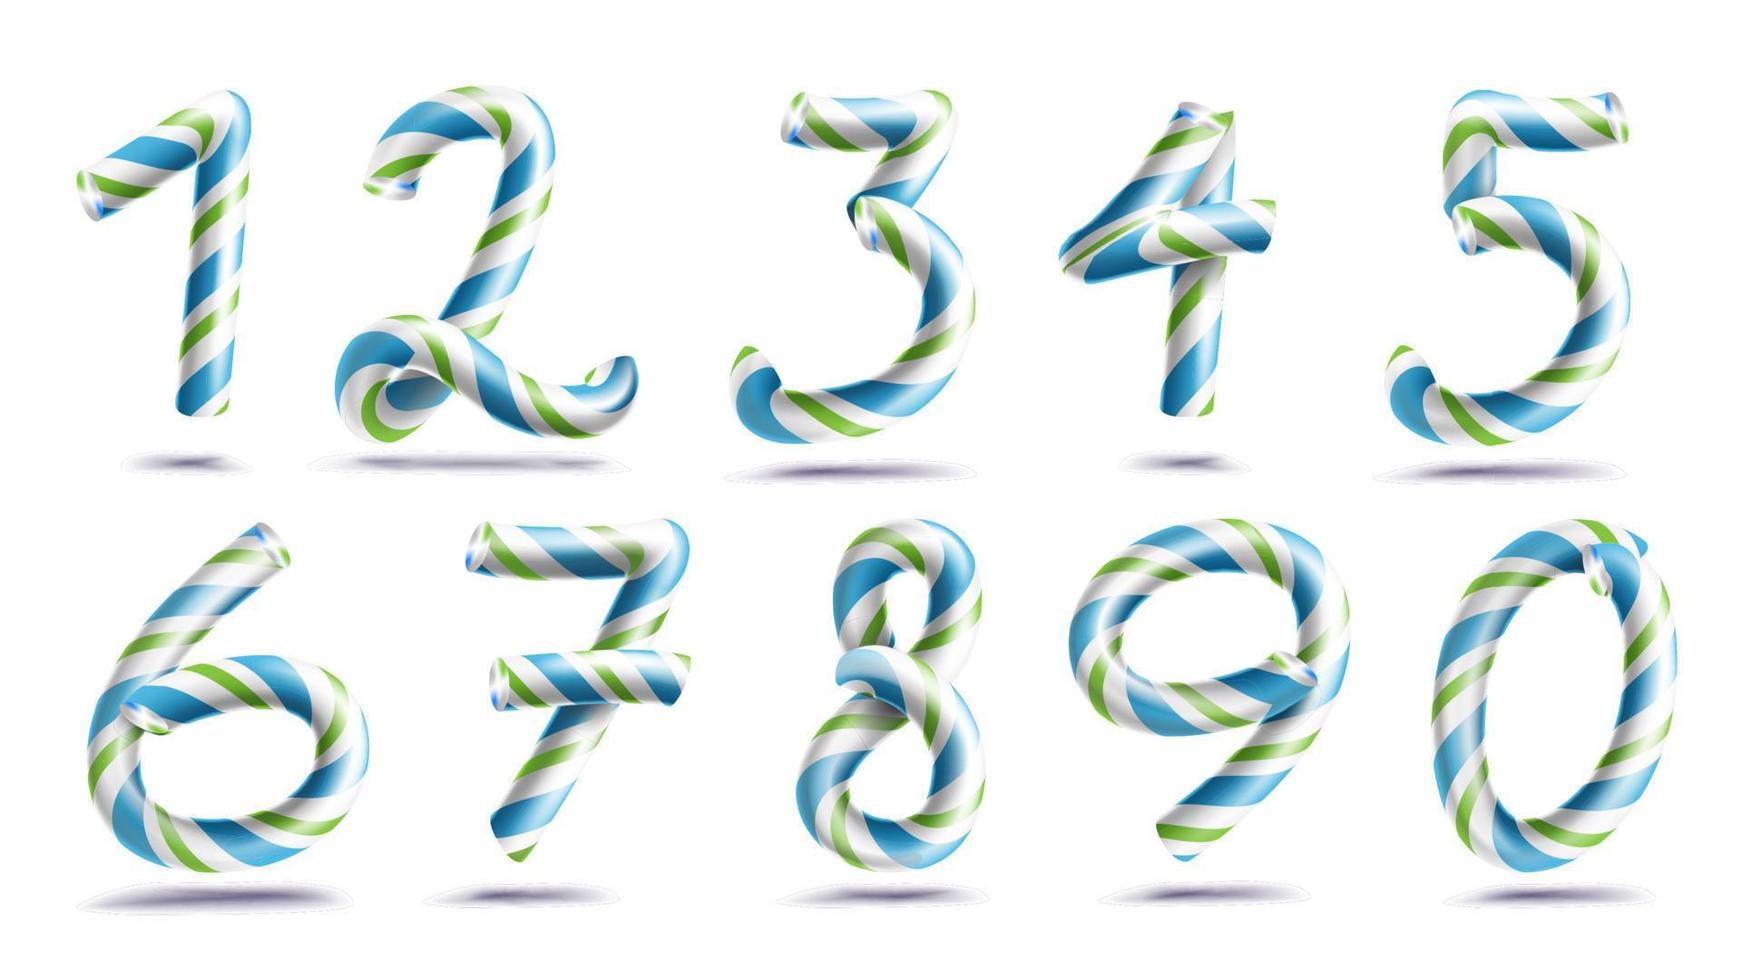 Zahlen Zeichensatz Vektor. 3D-Ziffern. Zahlen 1, 2, 3, 4, 5, 6, 7, 8, 9, 0. Weihnachtsfarben. blau, grün gestreift. klassische Weihnachtsminz-Hartzuckerstange. Neujahrsdesign. isoliert auf weißer Abbildung vektor